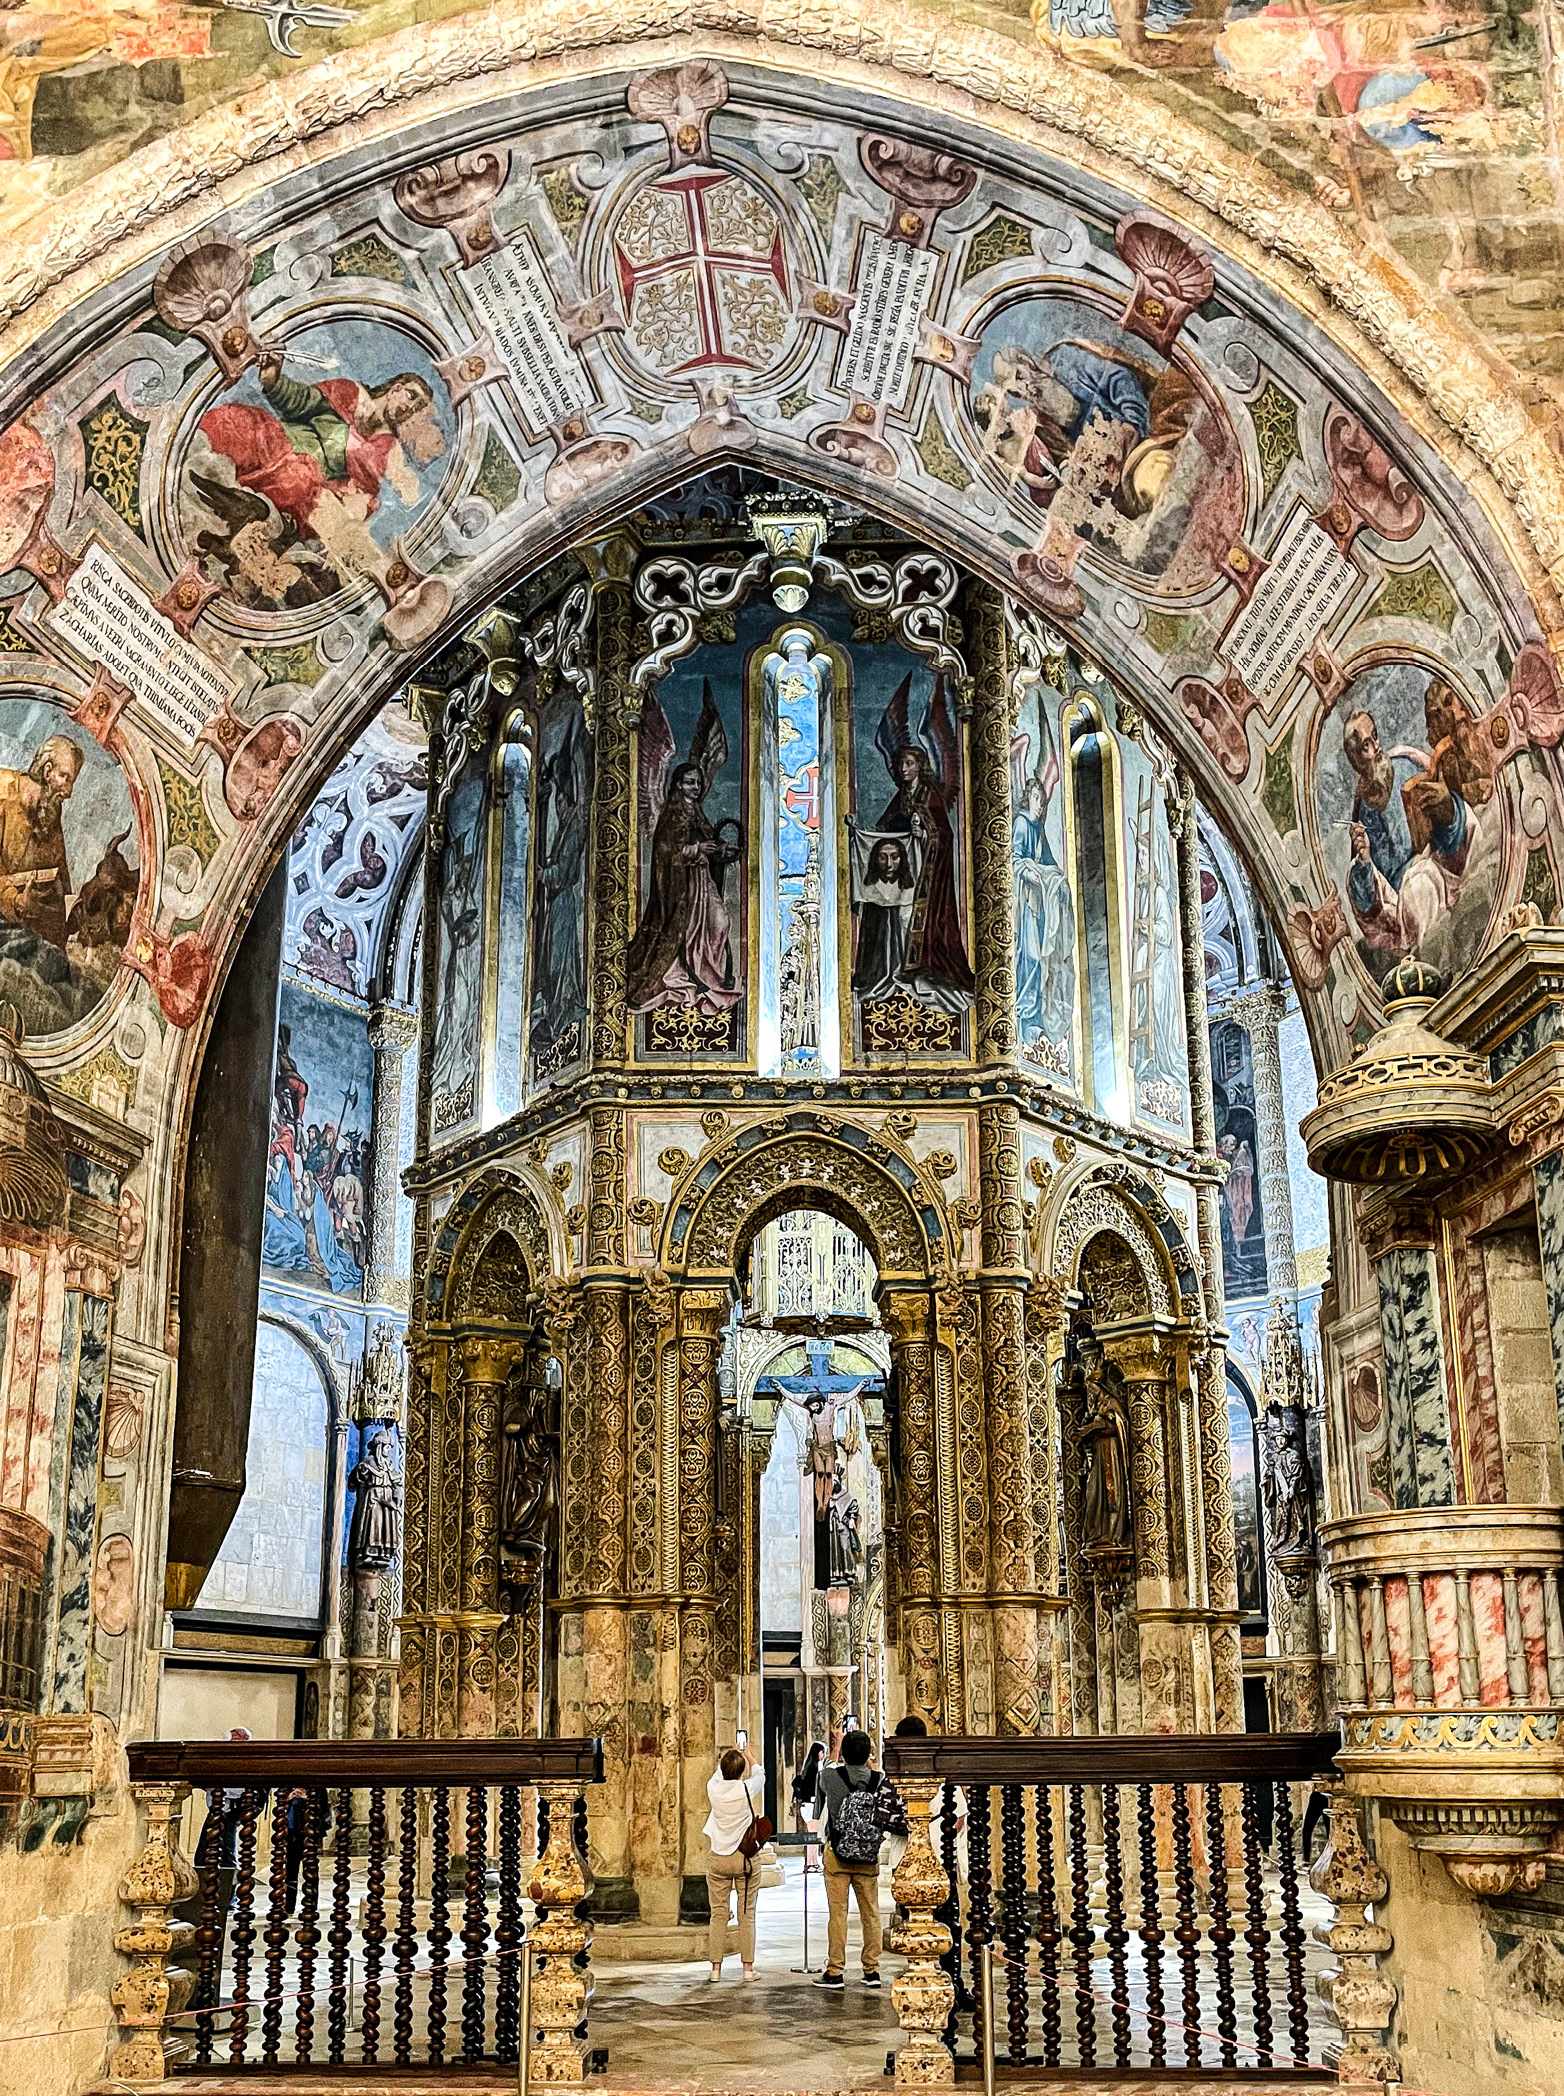 Fantastical interior of the octagonal Convento de Cristo church dazzles the senses